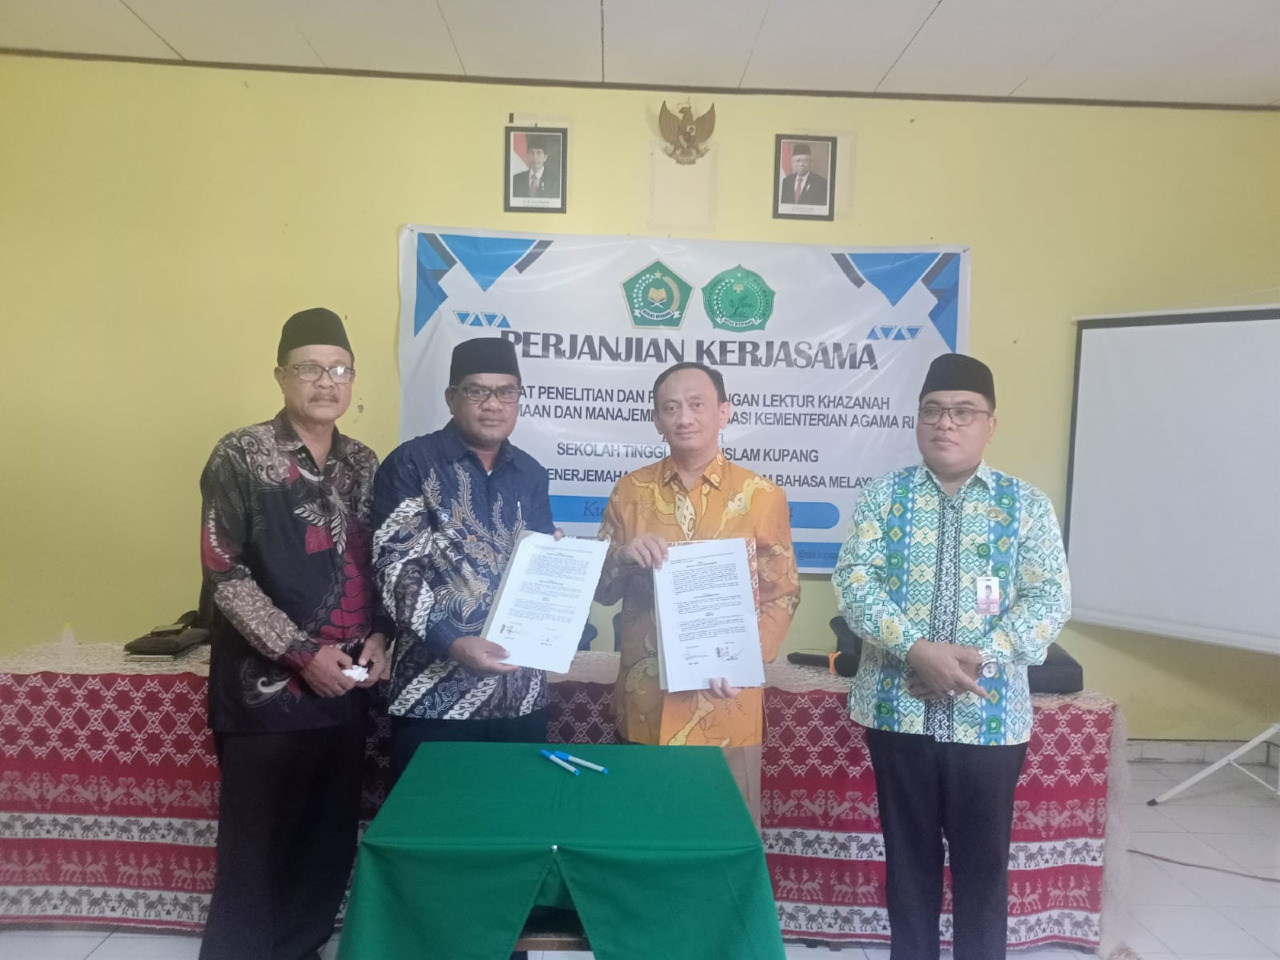 Segera Hadir Penerjemahan Al-Qur’an Bahasa Melayu Kupang